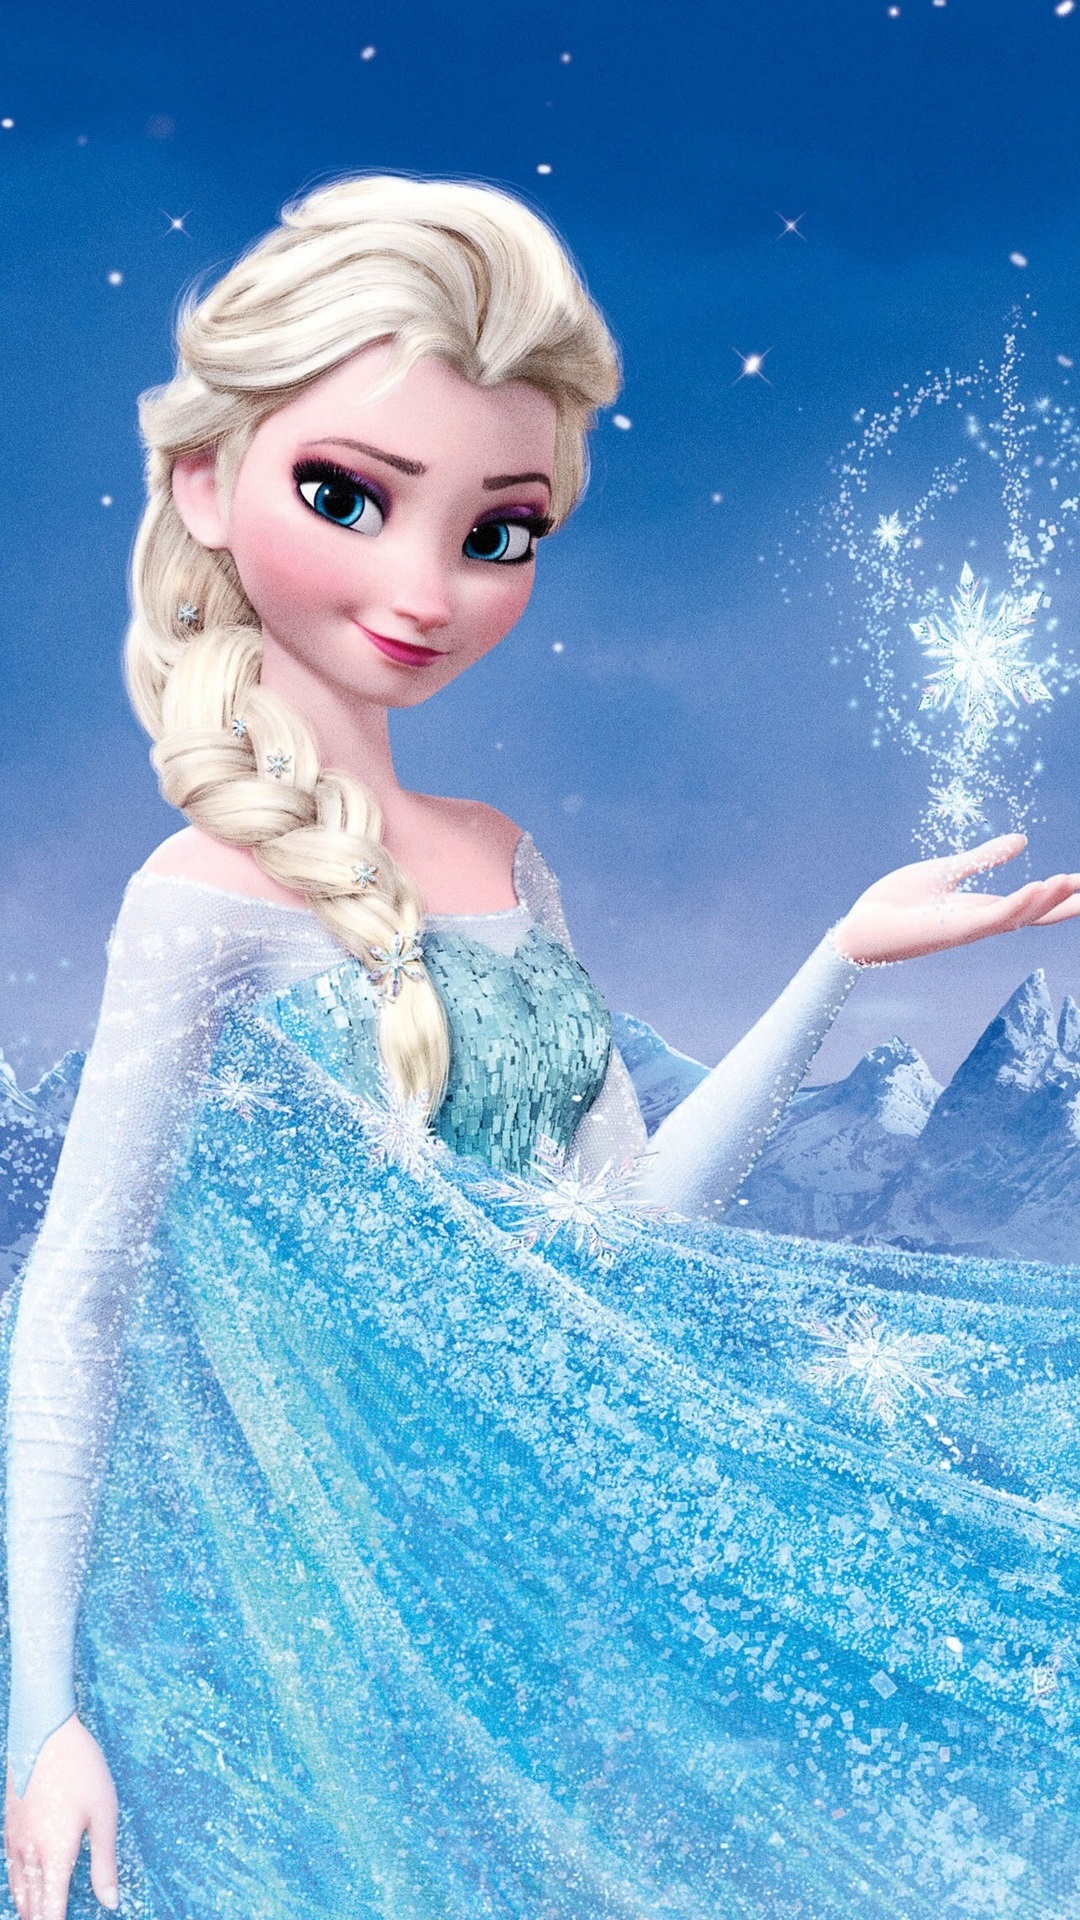 Frozen, Disney 2013 Movie, Princess Elsa 1080x1920 IPhone 8 7 6 6S Plus Wallpaper, Background, Picture, Image